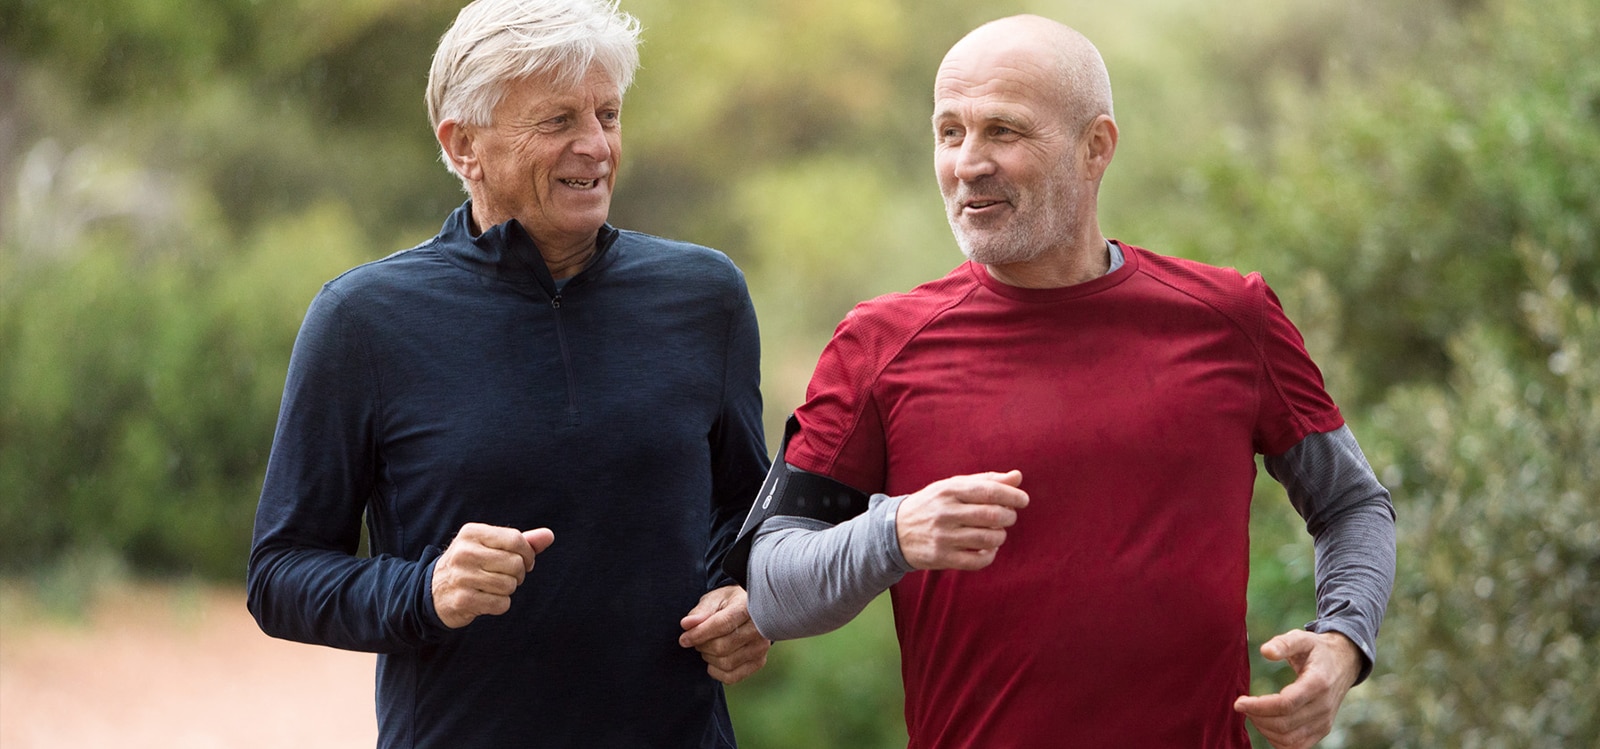 Двое мужчин 50−60 лет на пробежке